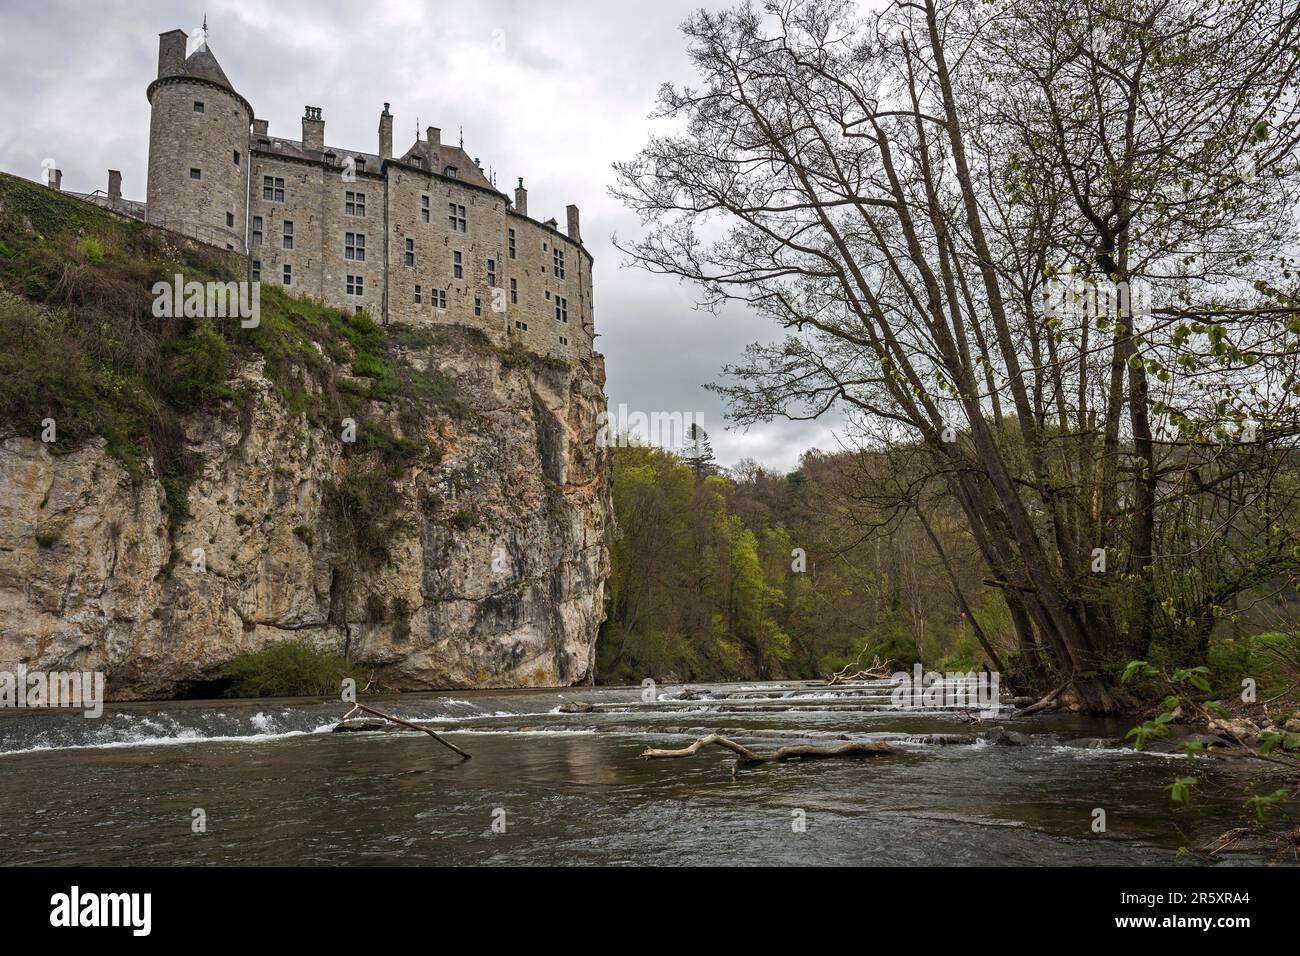 Castle, Chateau de Walzin, below River Lesse, Province of Namur, Dinant Region, Belgium Stock Photo